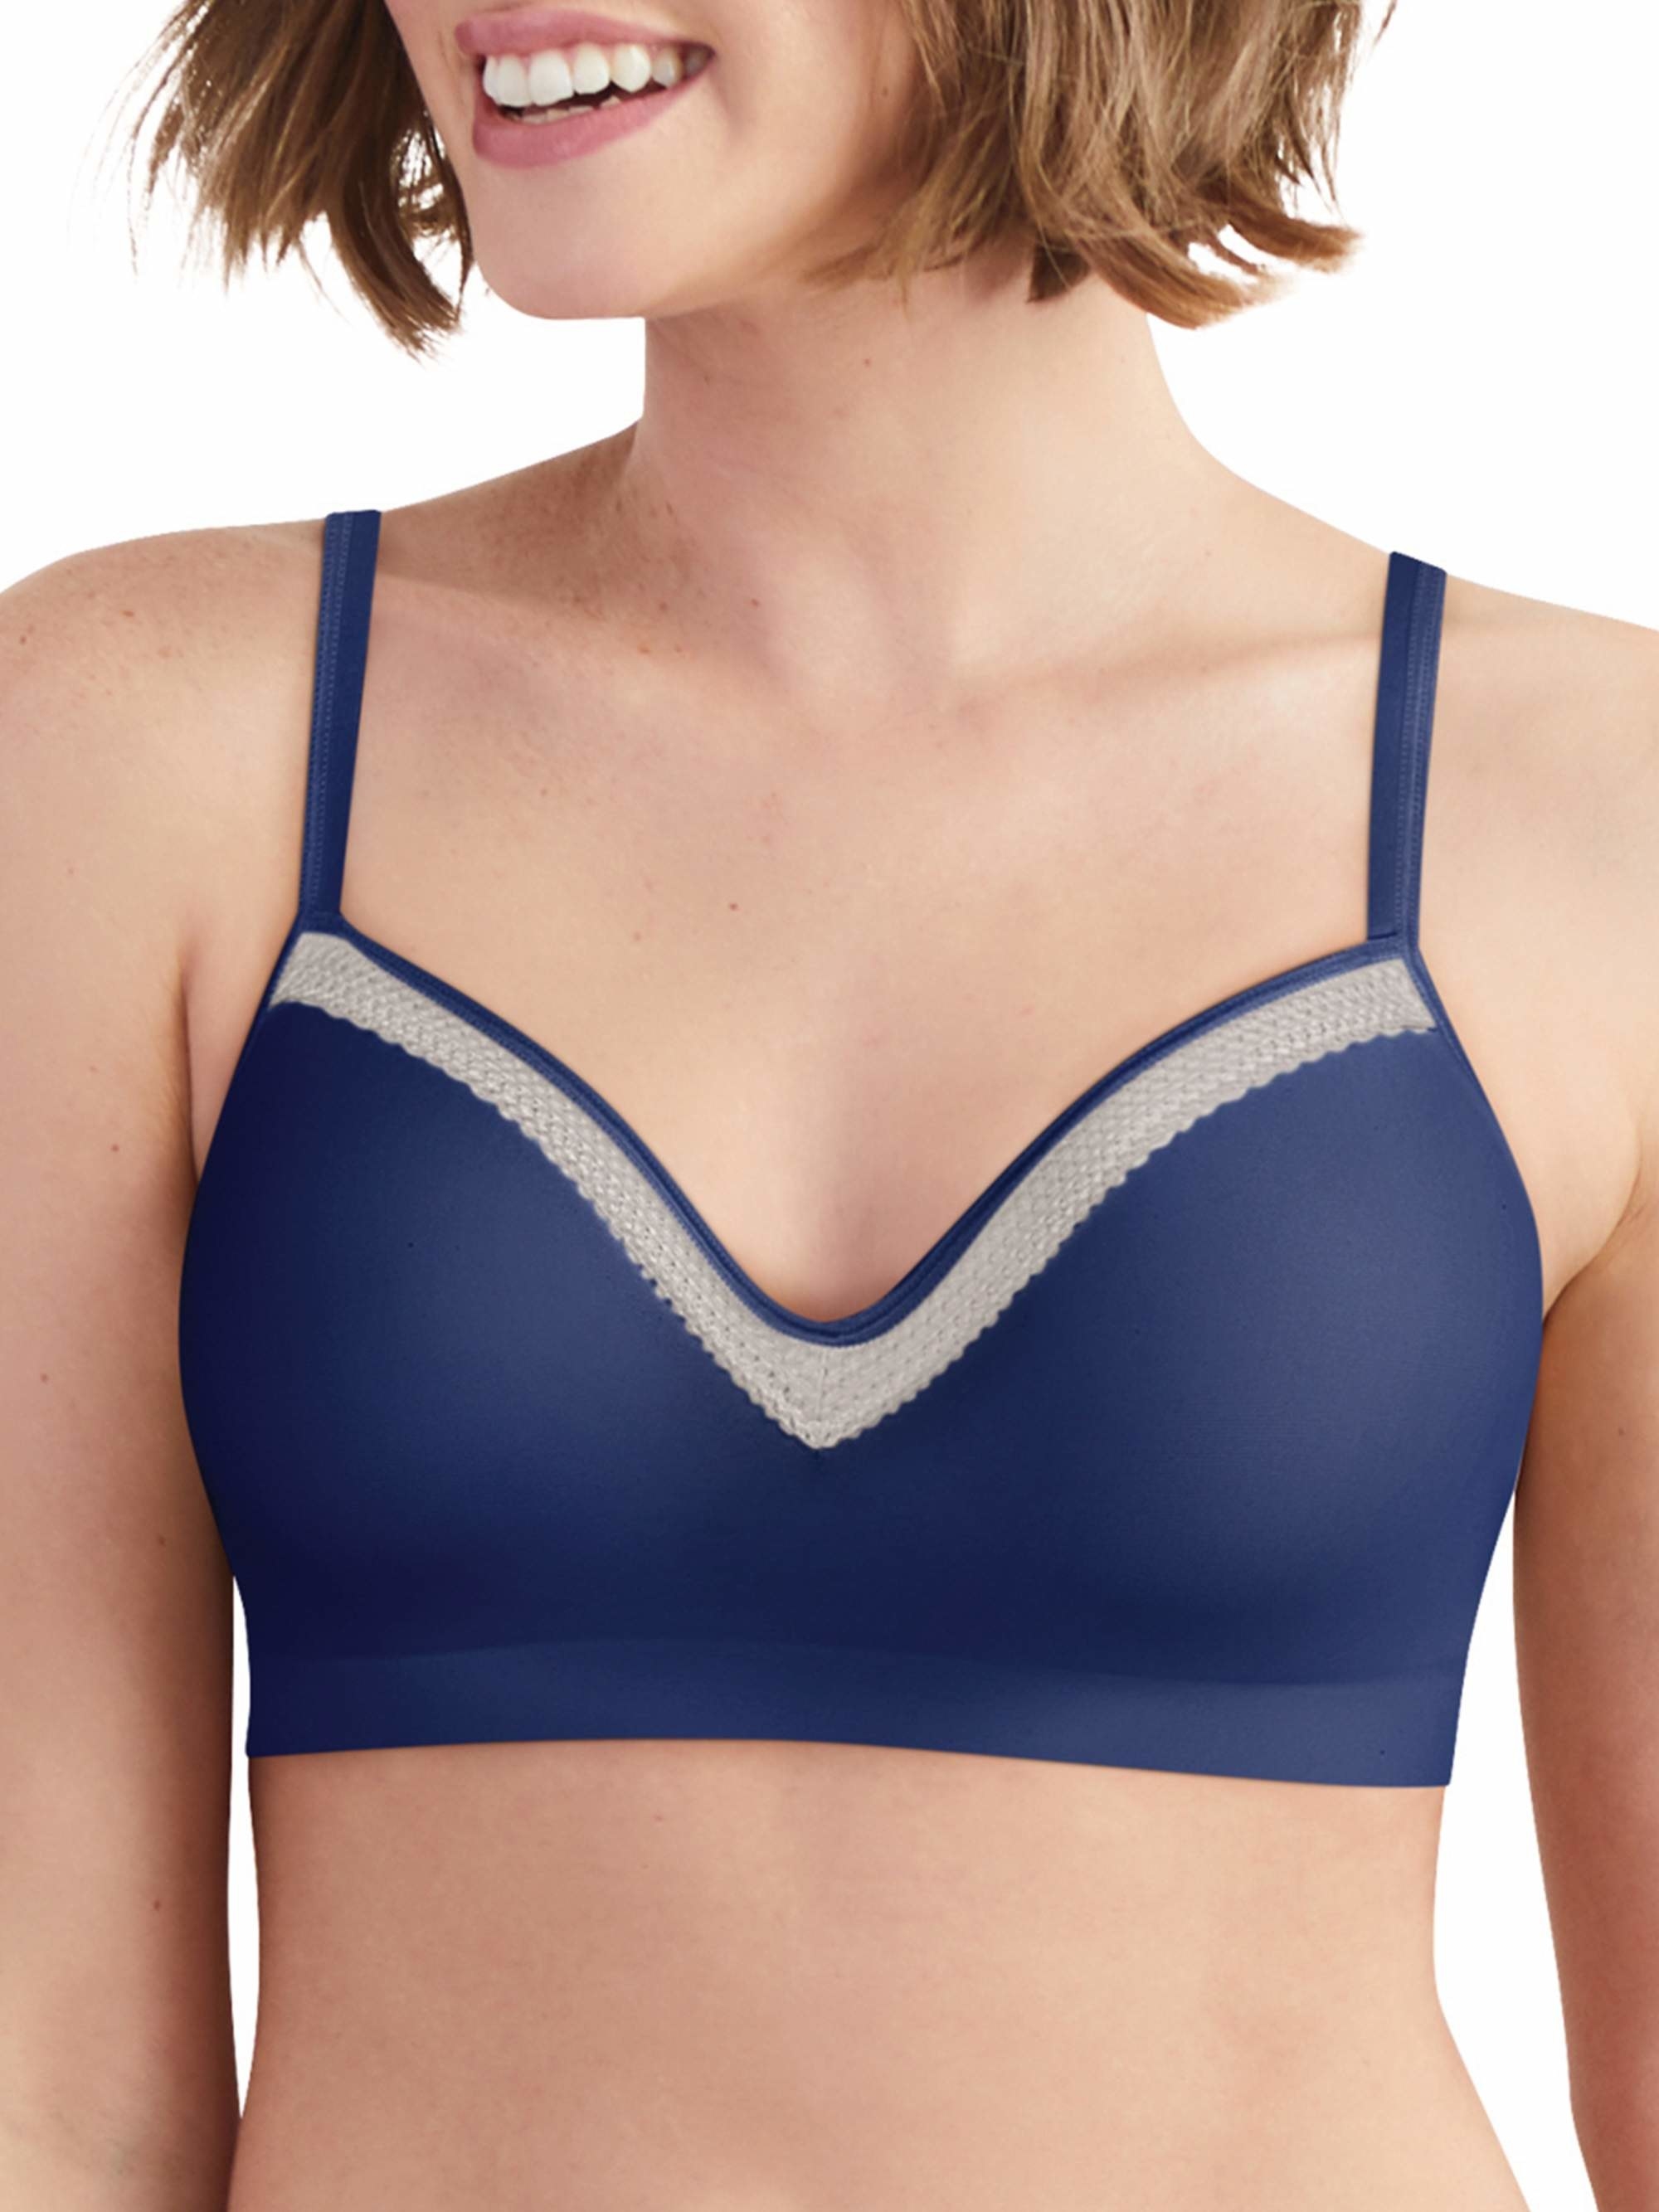 Model wearing the blue bra